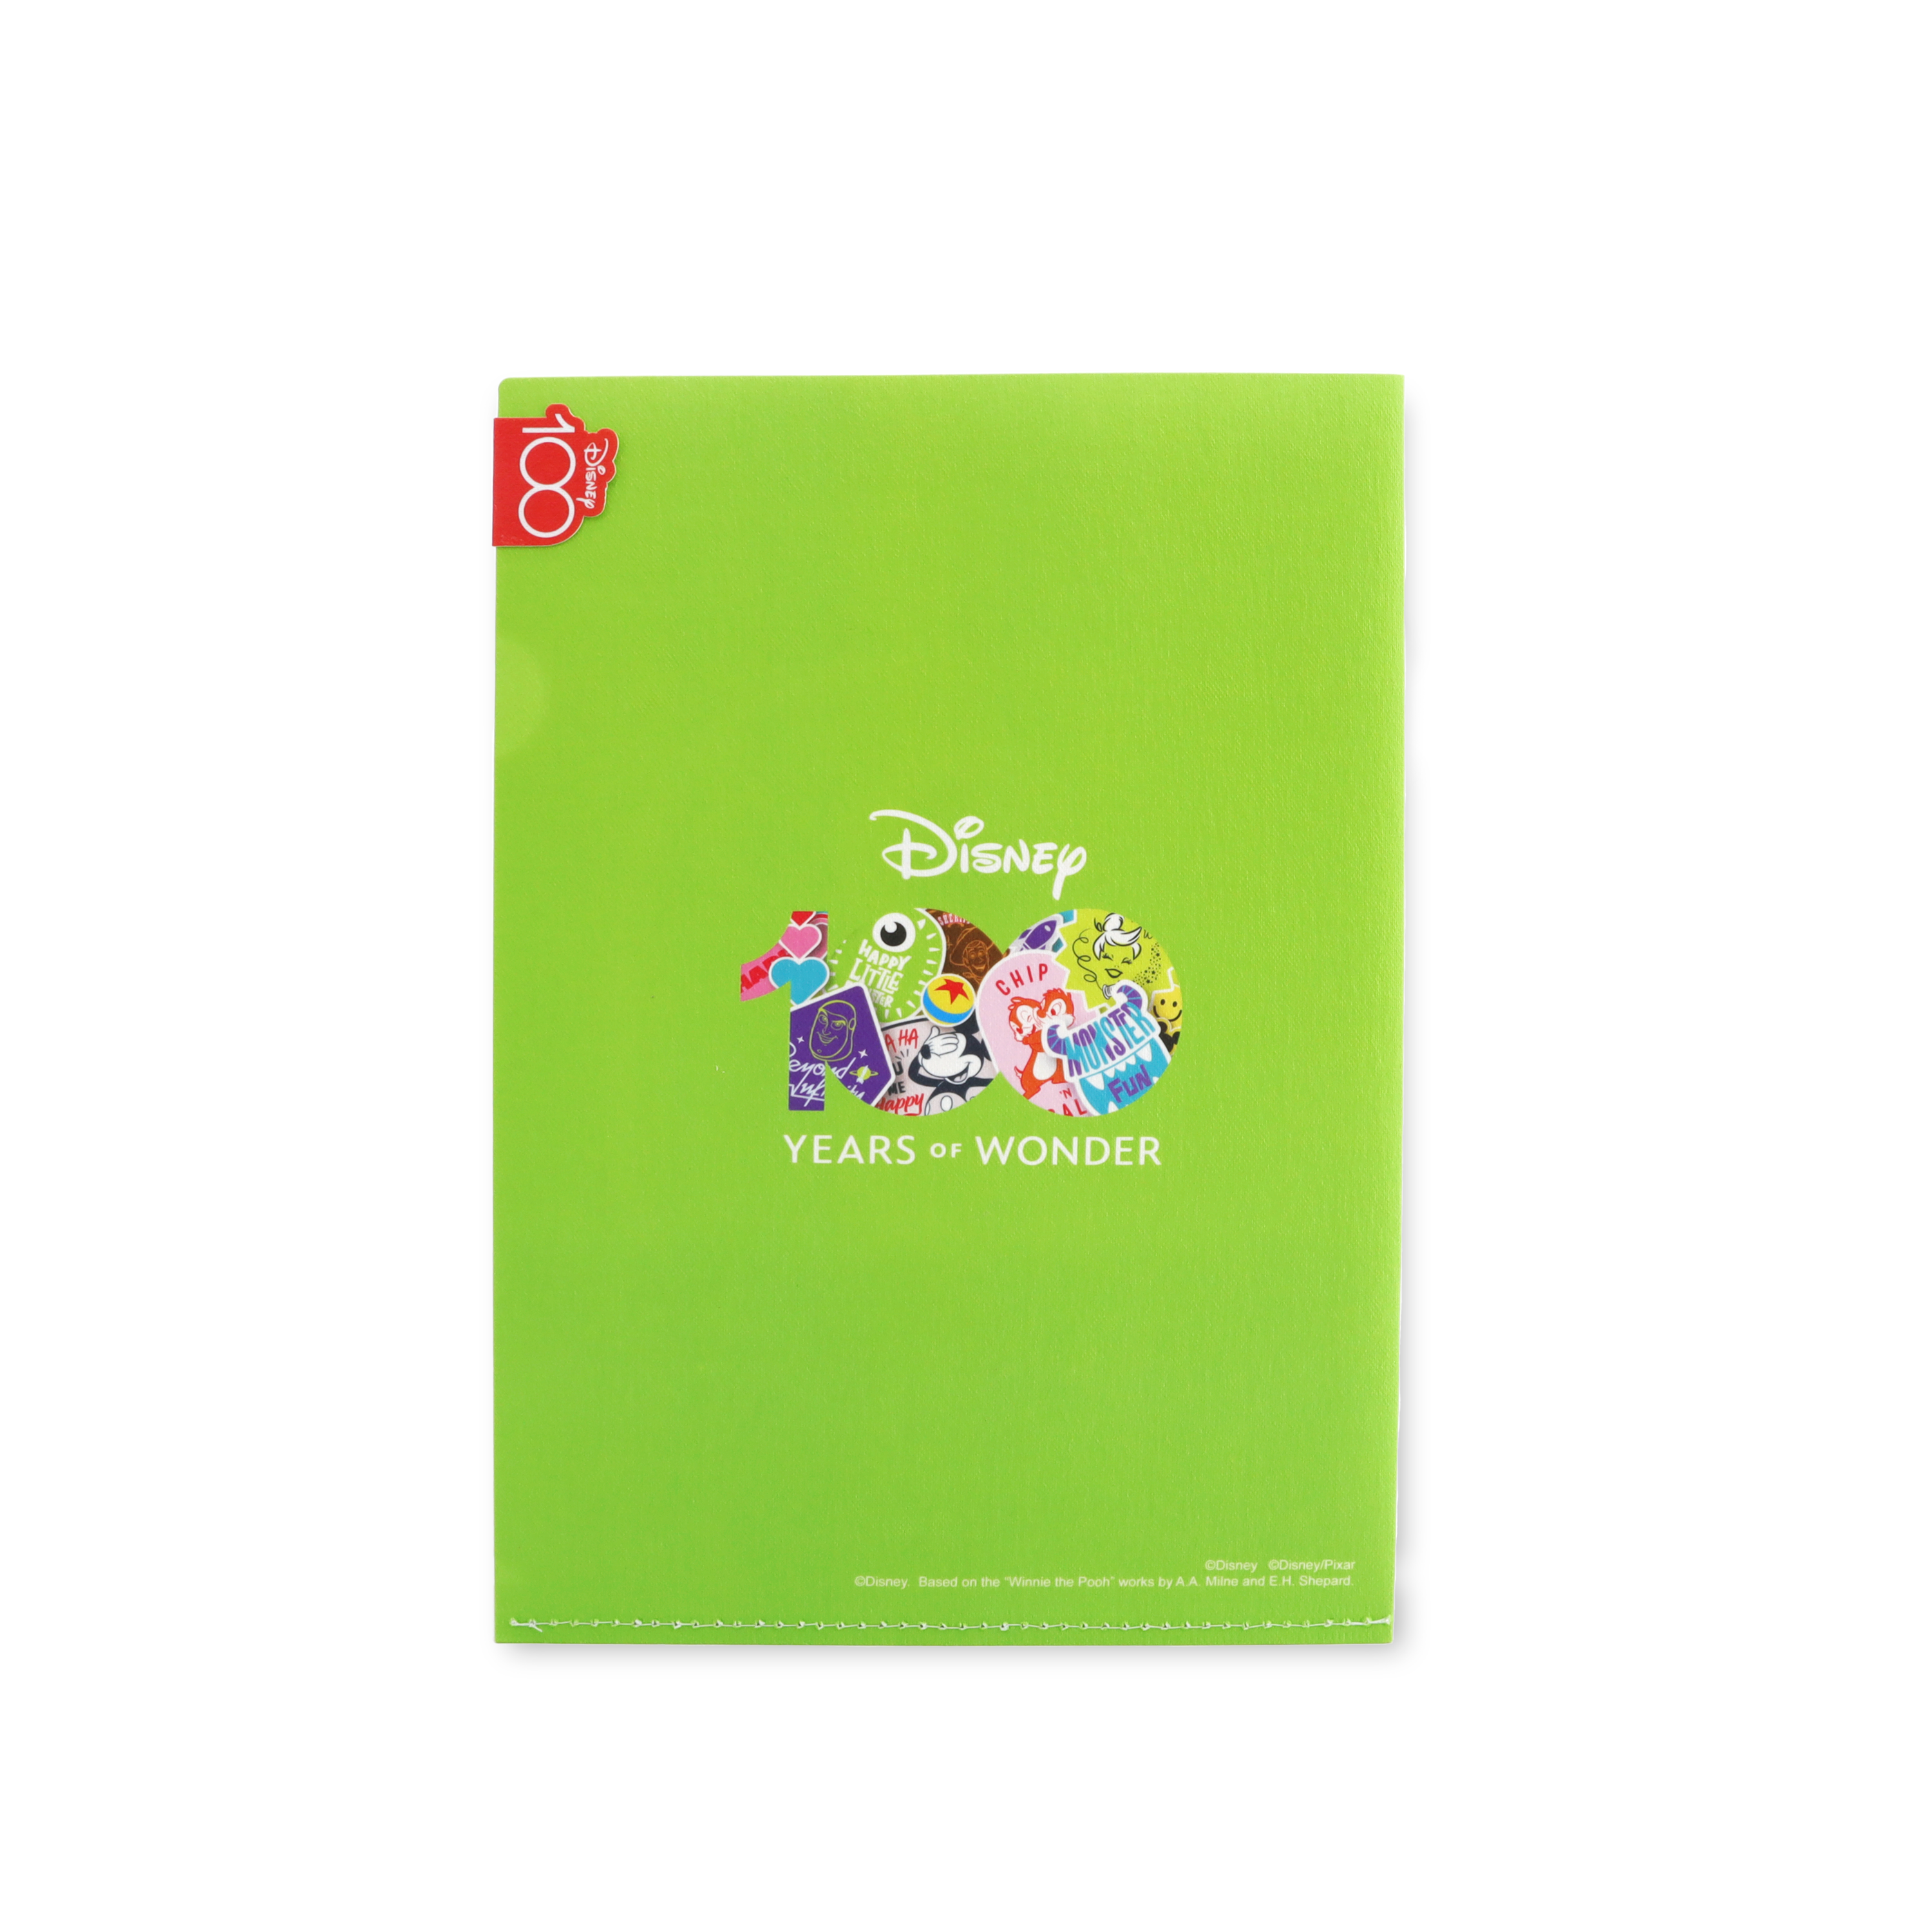 ecoFolder [Disney 100 - Happy Little Monster]